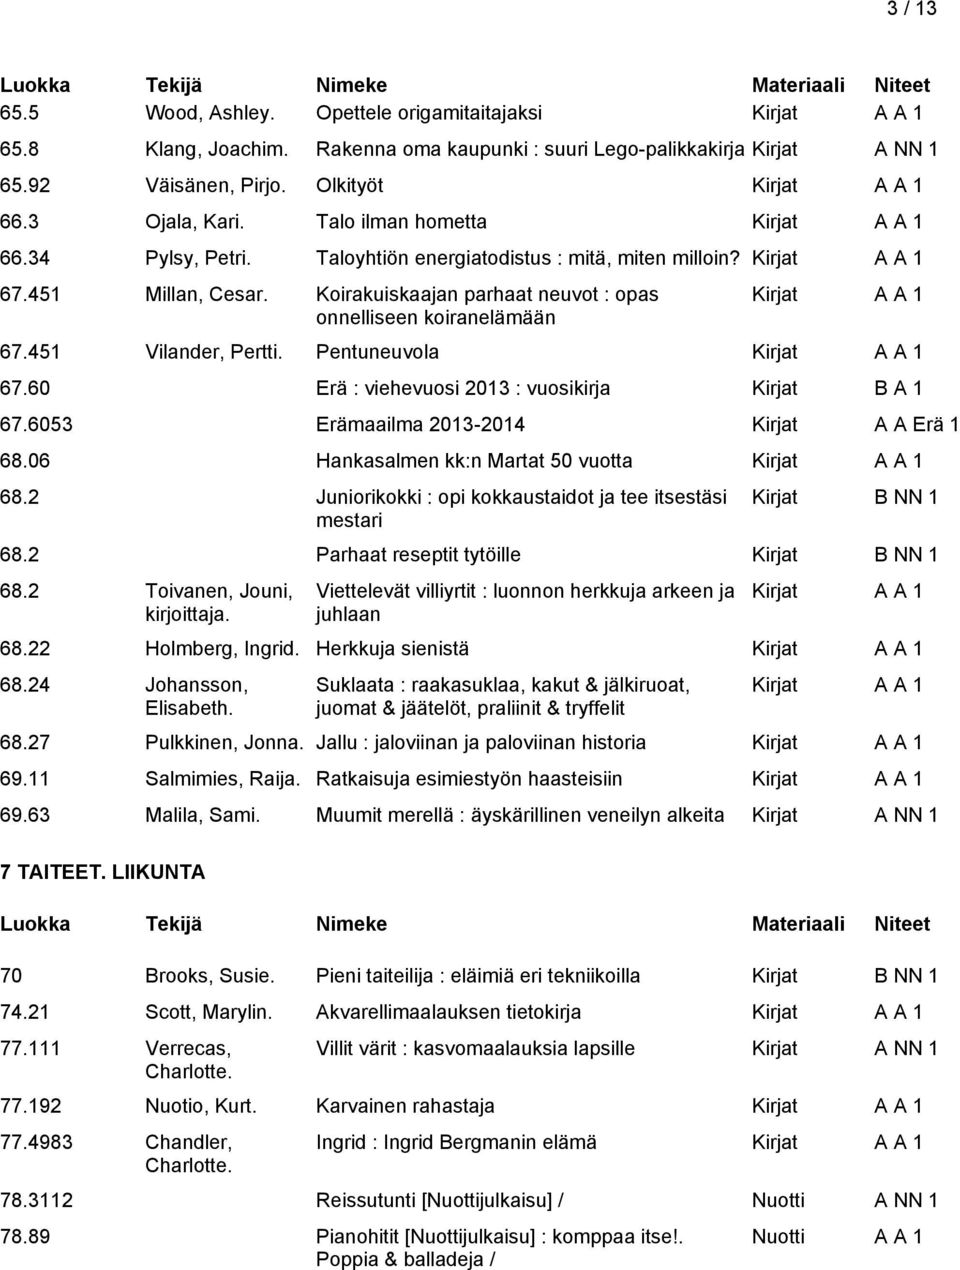 Pentuneuvola 67.60 Erä : viehevuosi 2013 : vuosikirja Kirjat 67.6053 Erämaailma 2013-2014 Kirjat A A Erä 1 68.06 Hankasalmen kk:n Martat 50 vuotta 68.